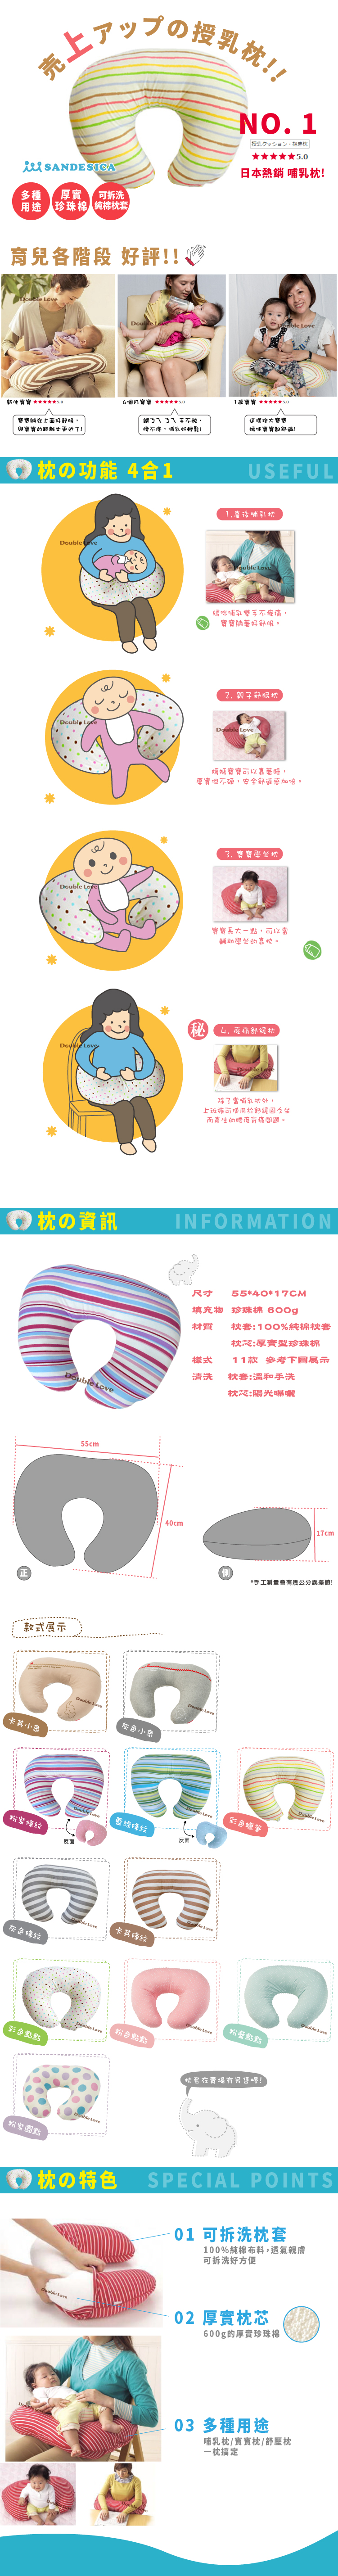 寵愛媽咪2件套組日本SANDEXICA機能型媽媽寶寶枕【A50002】哺乳枕/授乳枕/防溢奶枕/防吐奶枕/孕婦枕